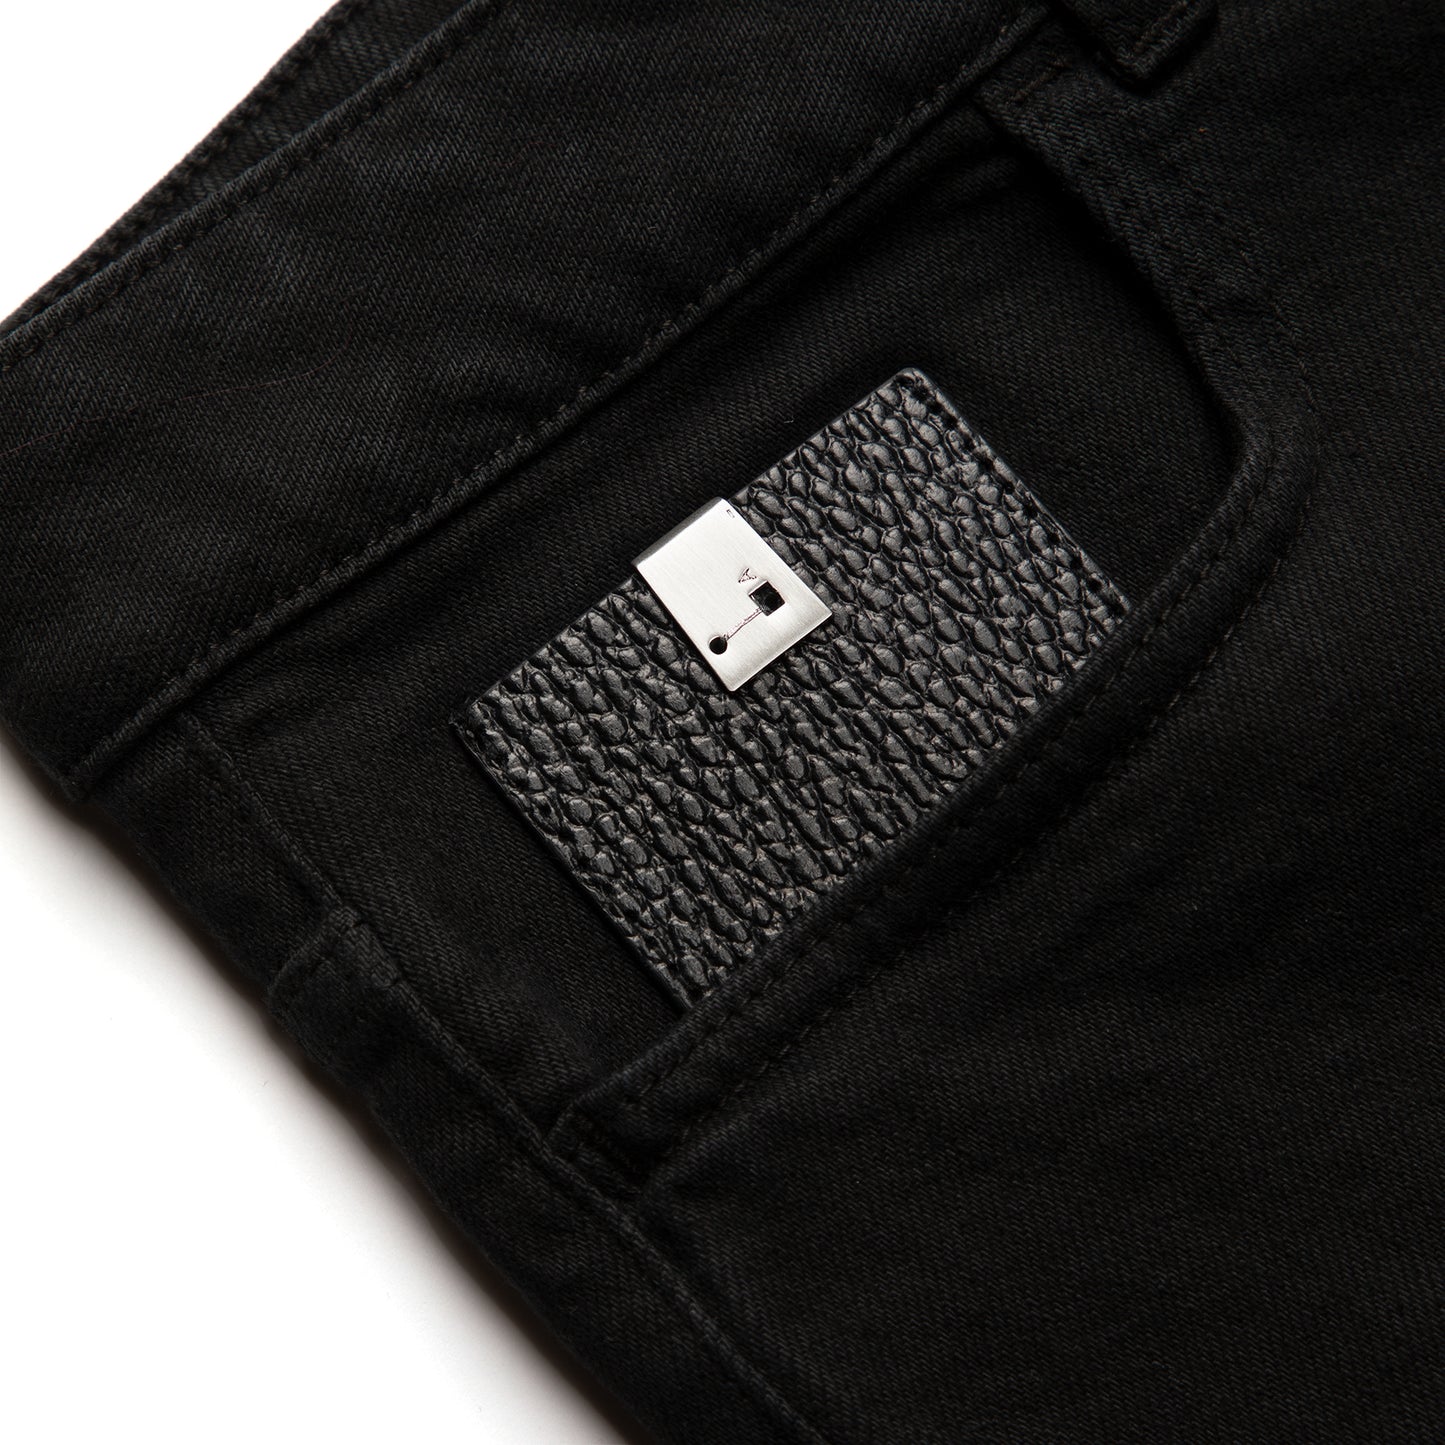 1017 ALYX 9SM Spliced 6 Pocket Jean (Black)